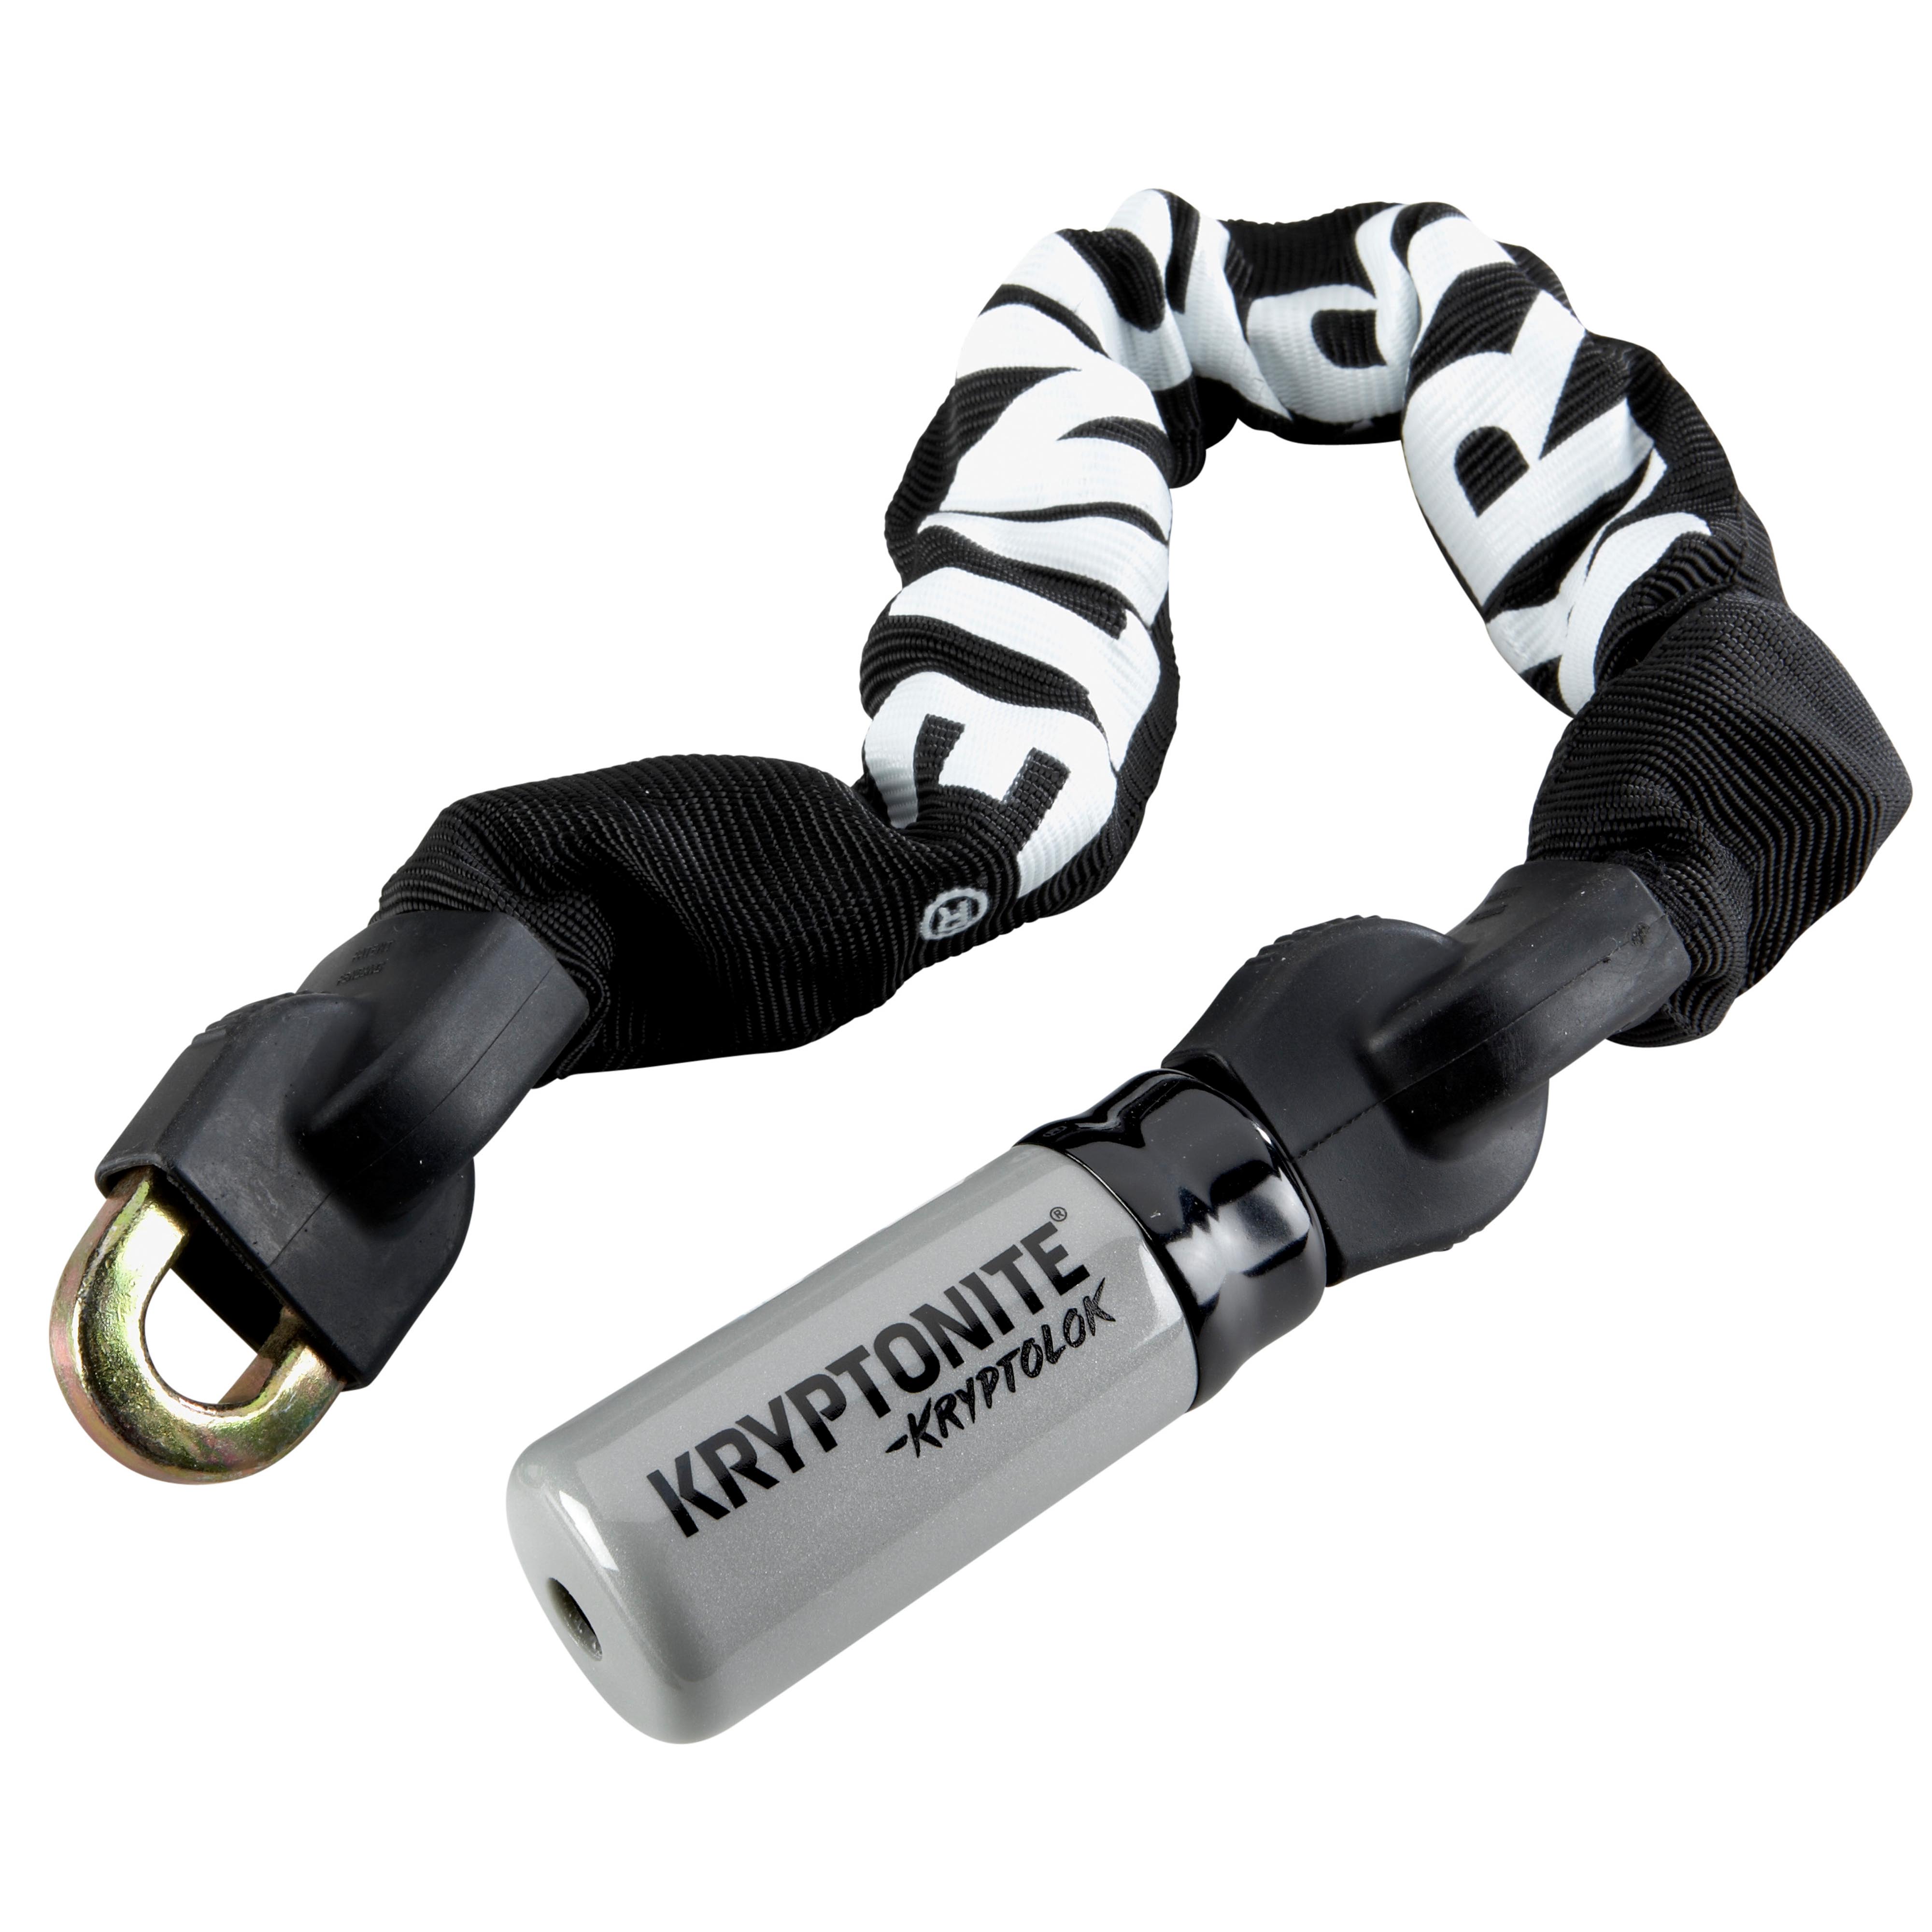 Kryptonite KryptoLok Series 2 955 Mini Integrated Chain Lock 